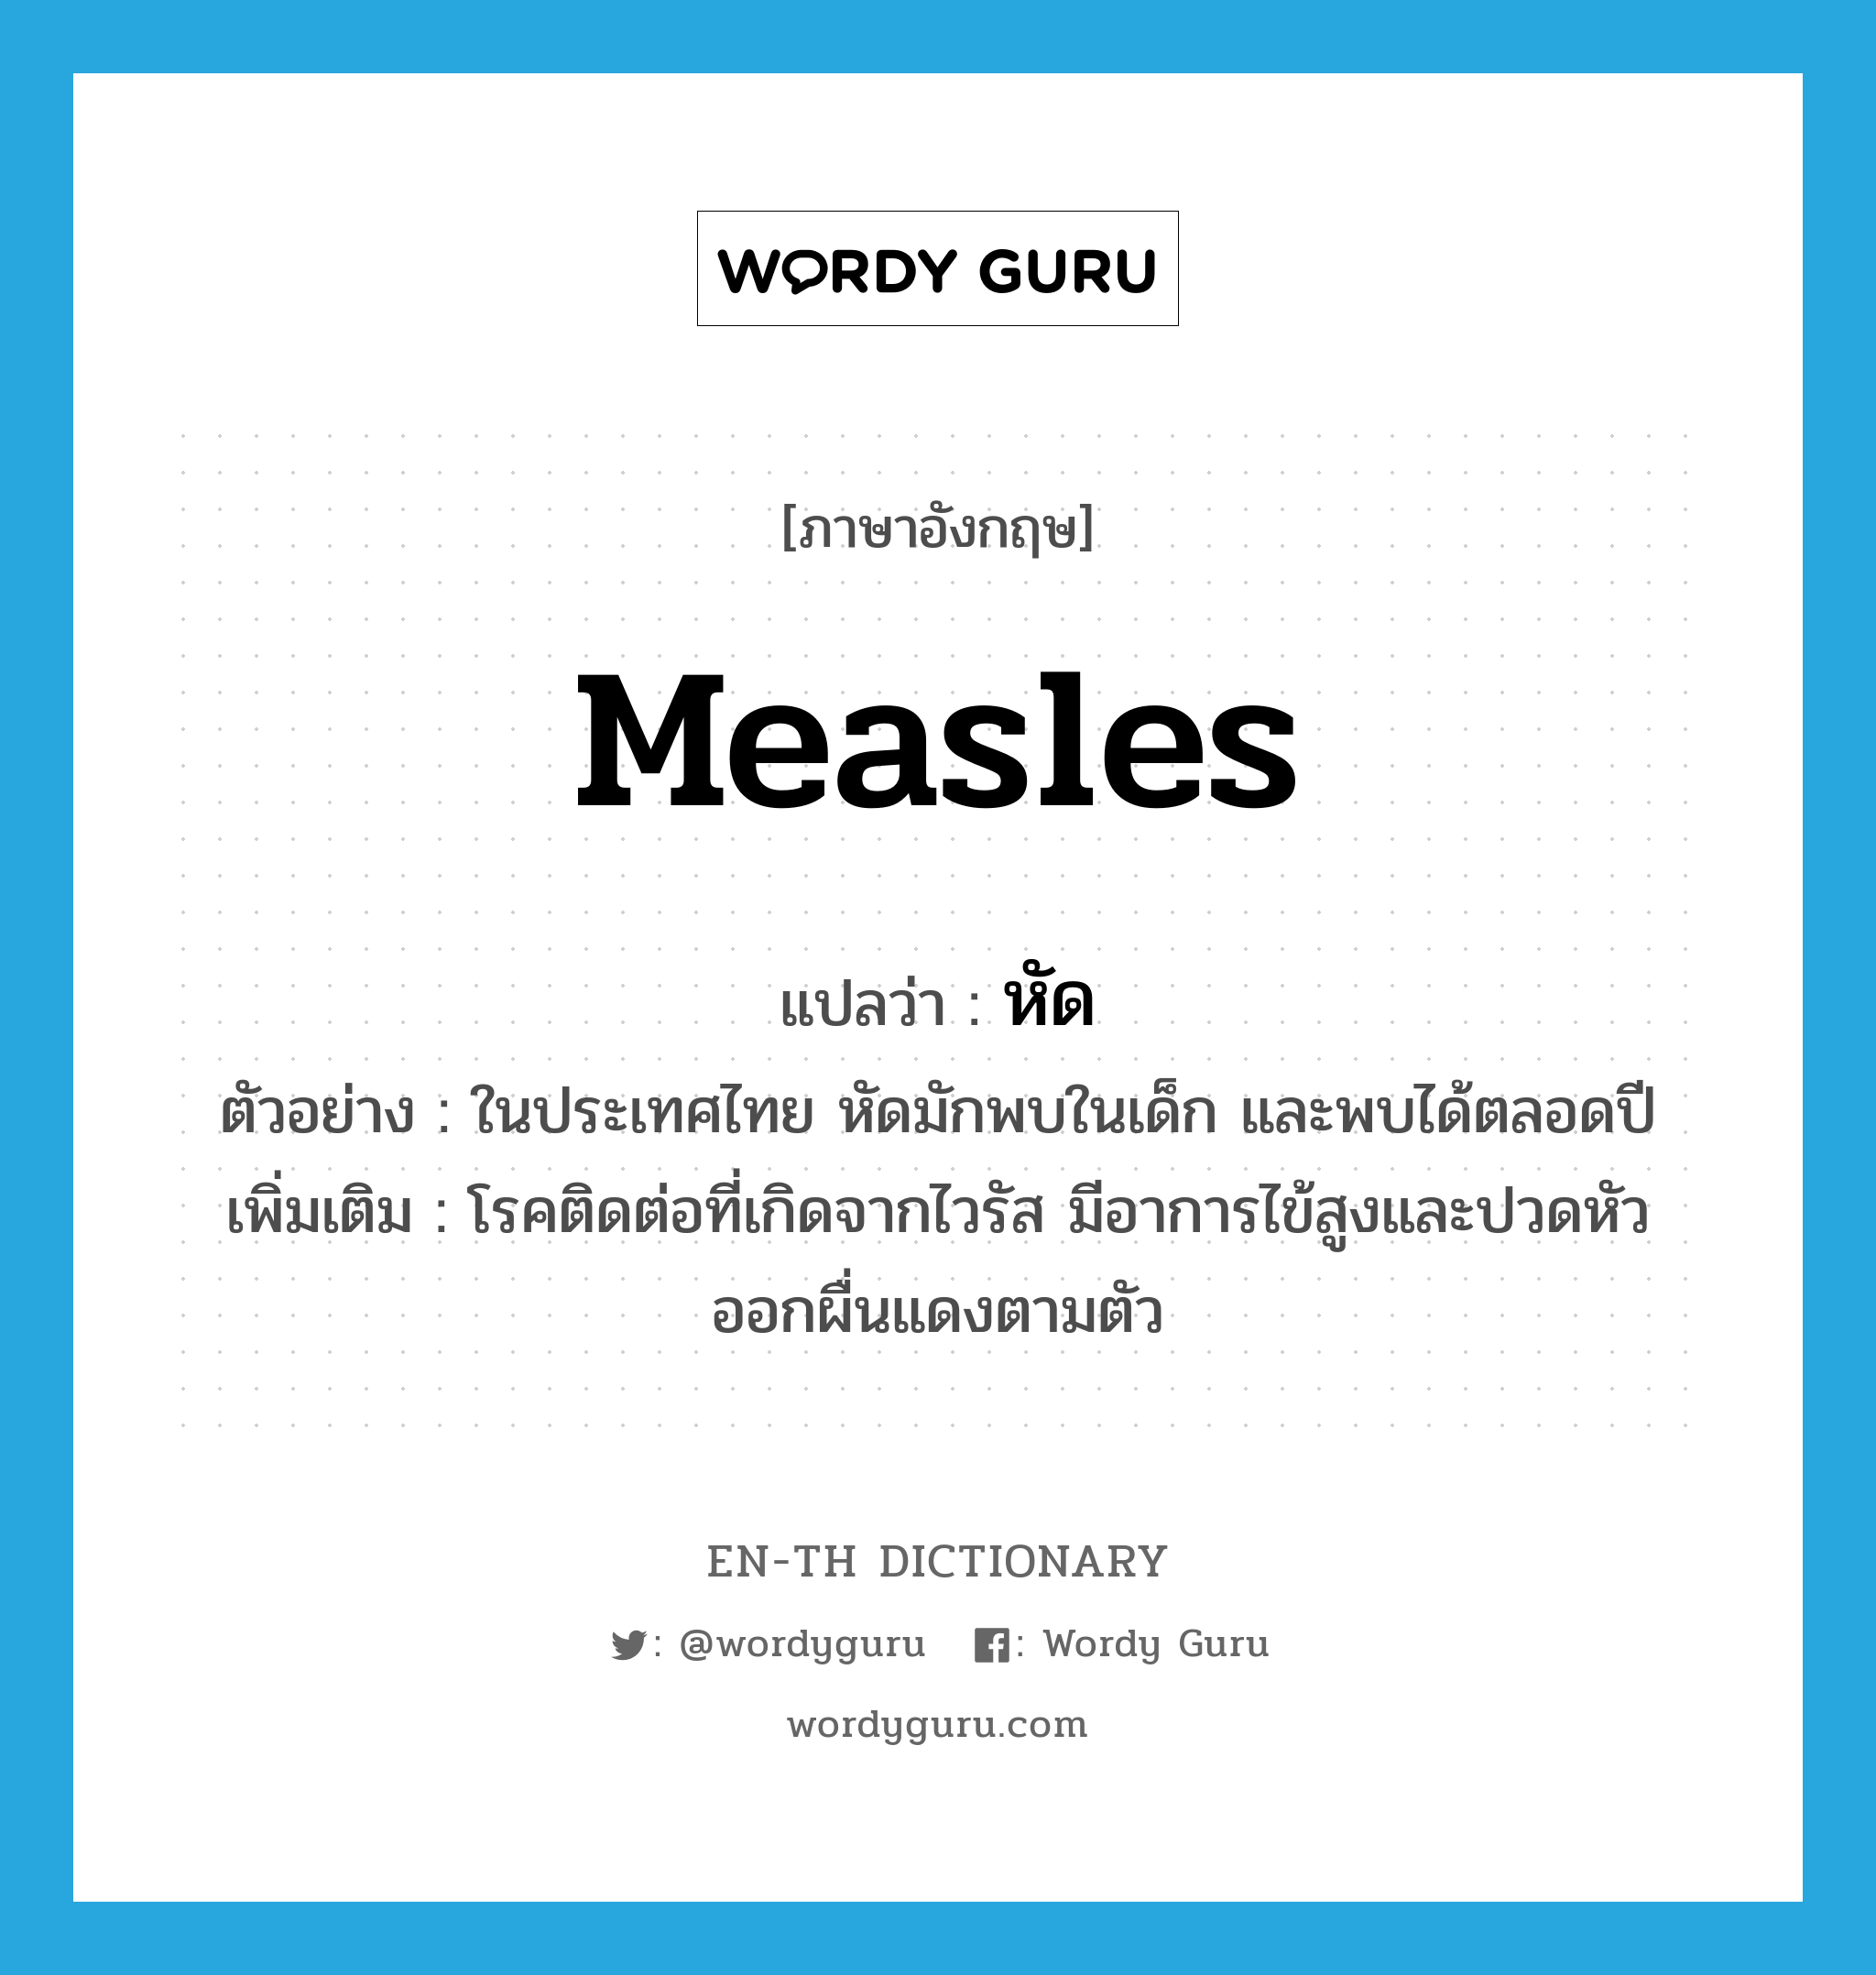 หัด ภาษาอังกฤษ?, คำศัพท์ภาษาอังกฤษ หัด แปลว่า measles ประเภท N ตัวอย่าง ในประเทศไทย หัดมักพบในเด็ก และพบได้ตลอดปี เพิ่มเติม โรคติดต่อที่เกิดจากไวรัส มีอาการไข้สูงและปวดหัว ออกผื่นแดงตามตัว หมวด N